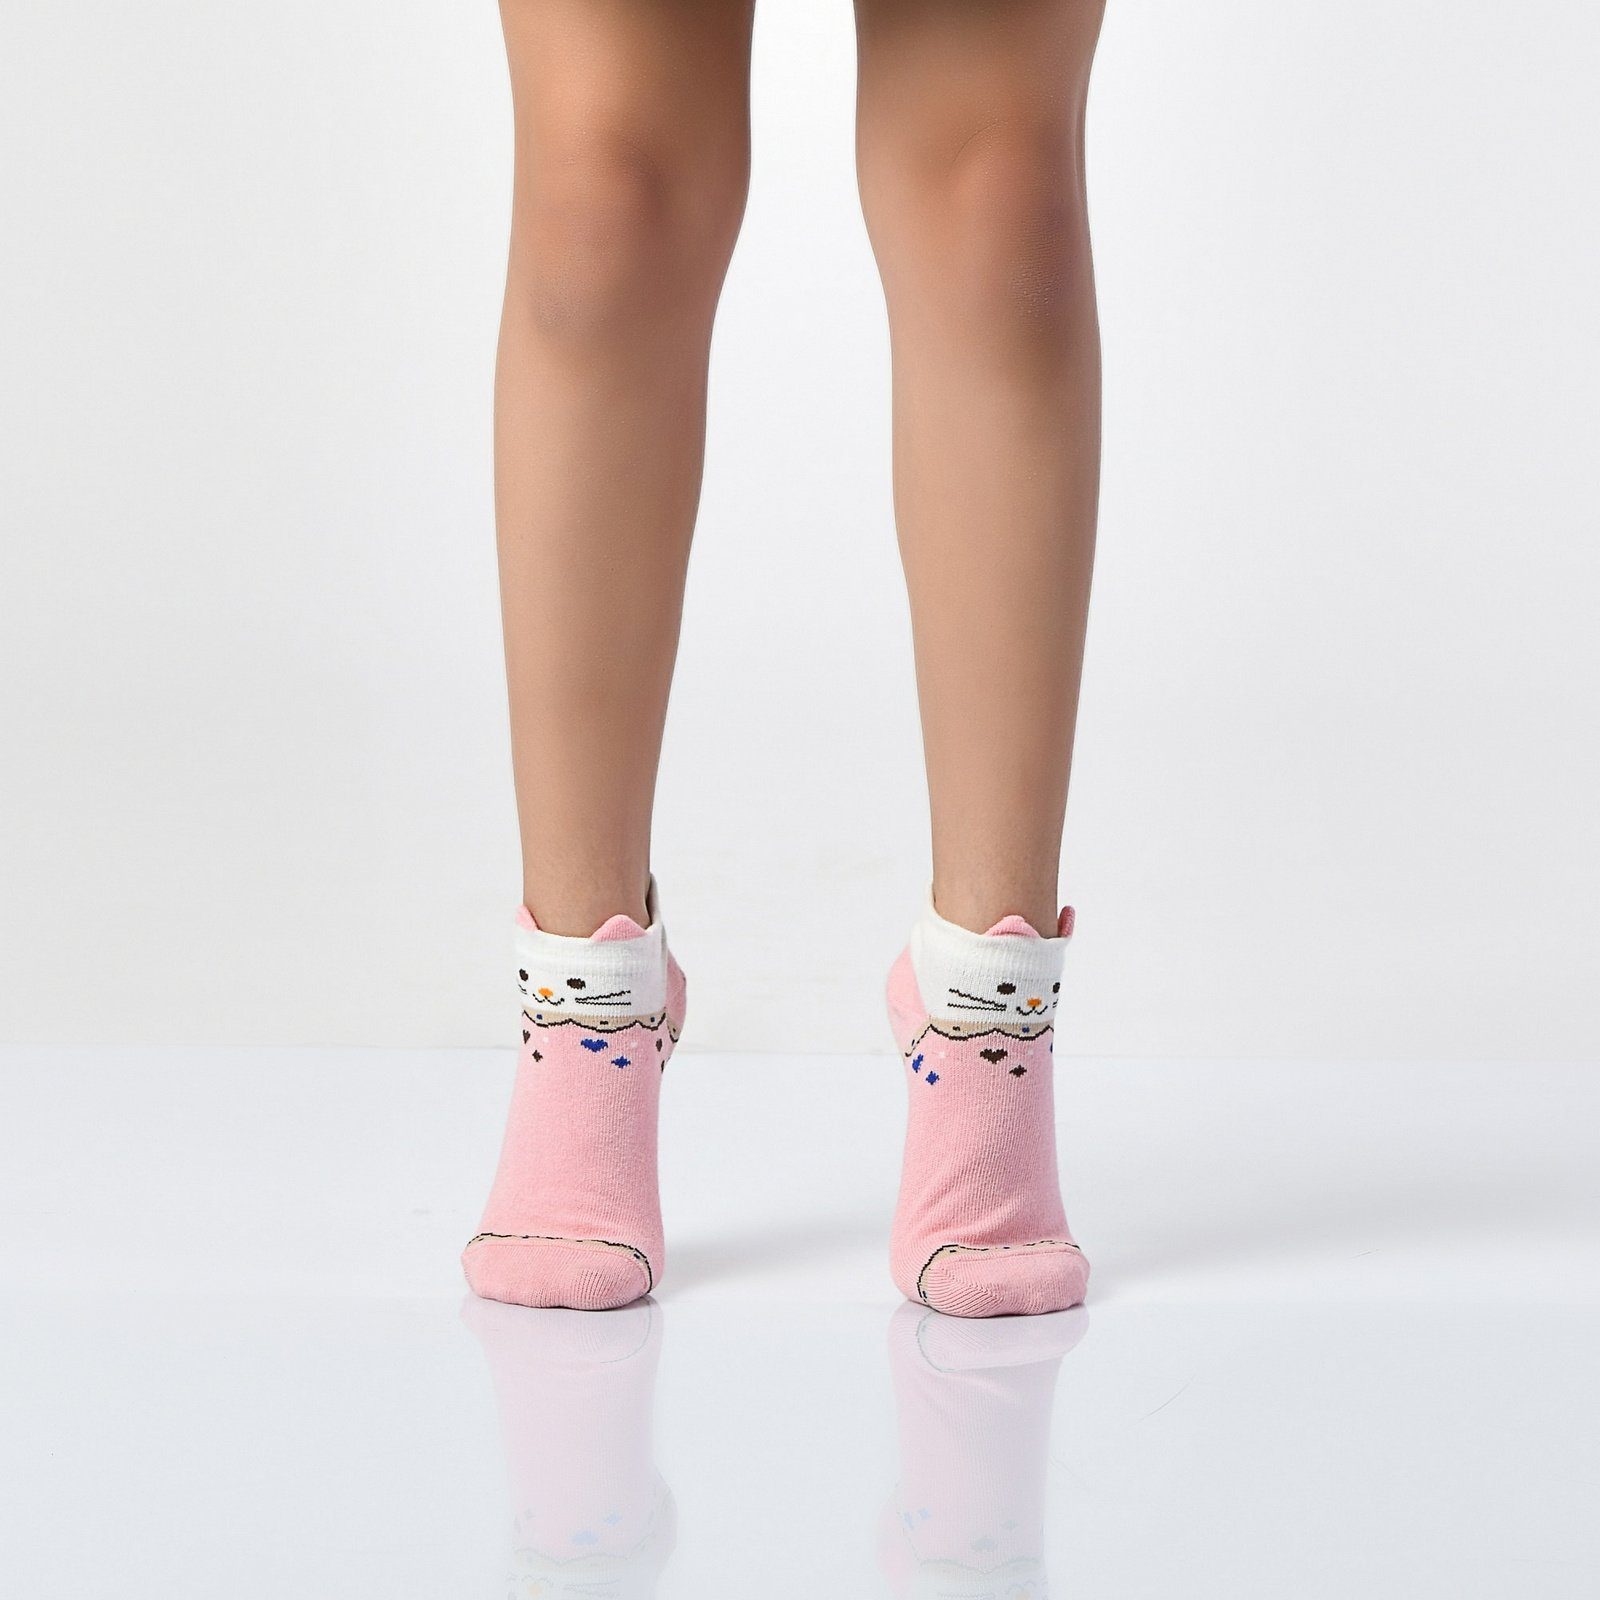 Mädchen Socken Kindersocken Sneakersocken Kurzsocken Paar 12-Paar) (Paar, 21-36 12 12-Paar LOREZA